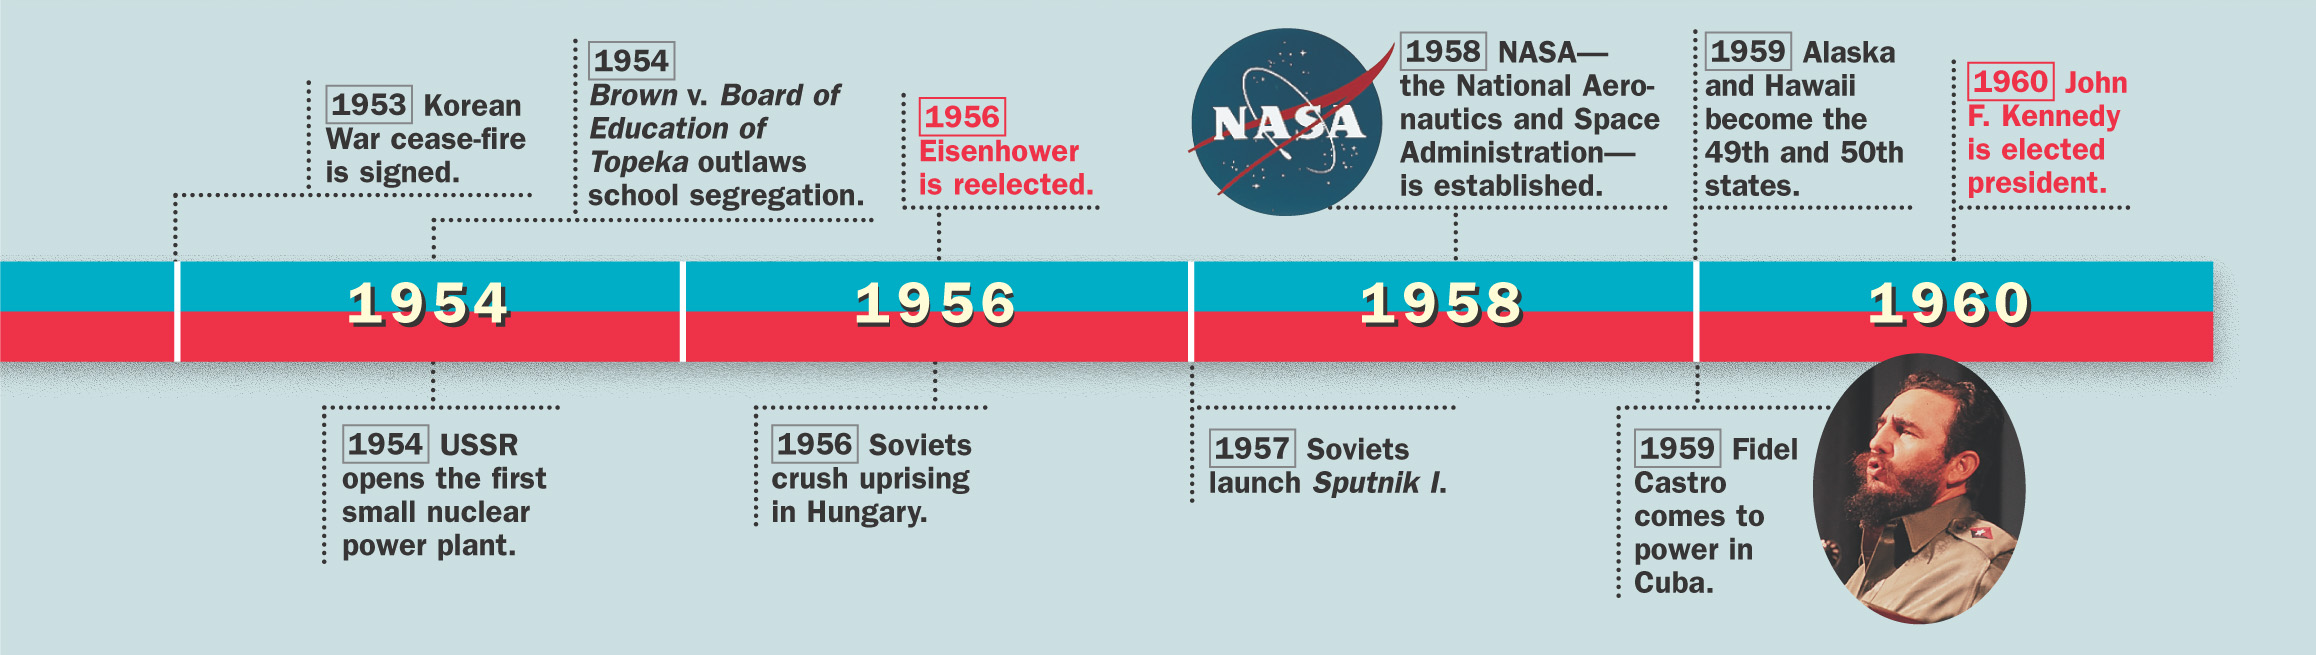 Timeline: 1953 - 1960 